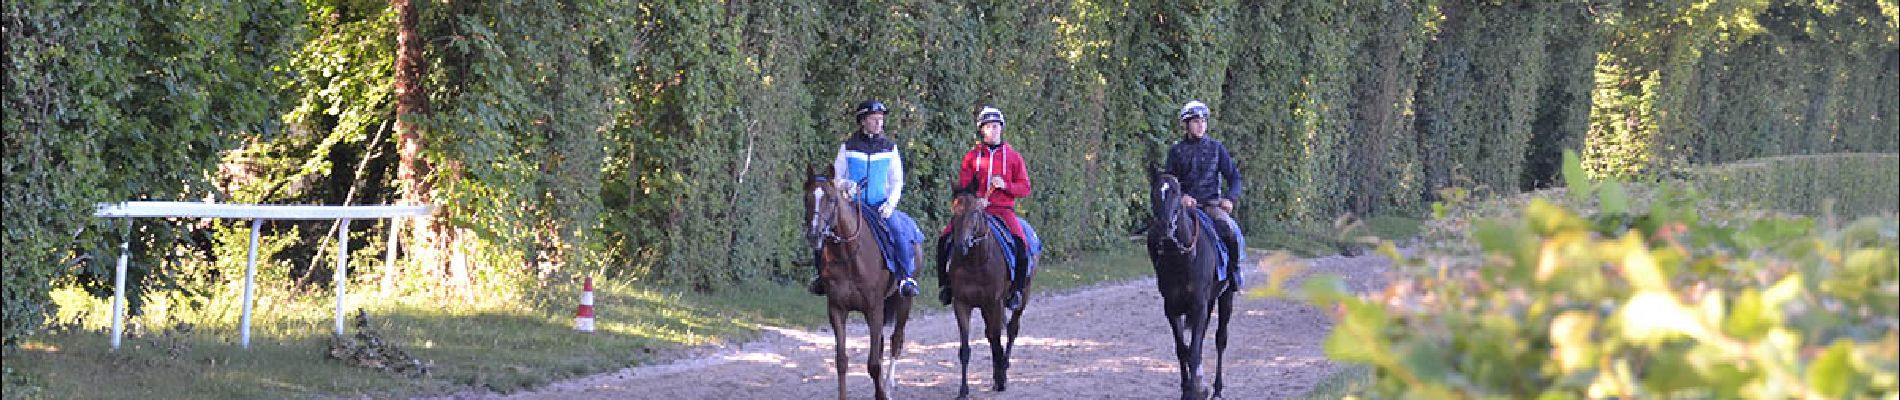 POI Coye-la-Forêt - Entrainement des chevaux au galop - Photo